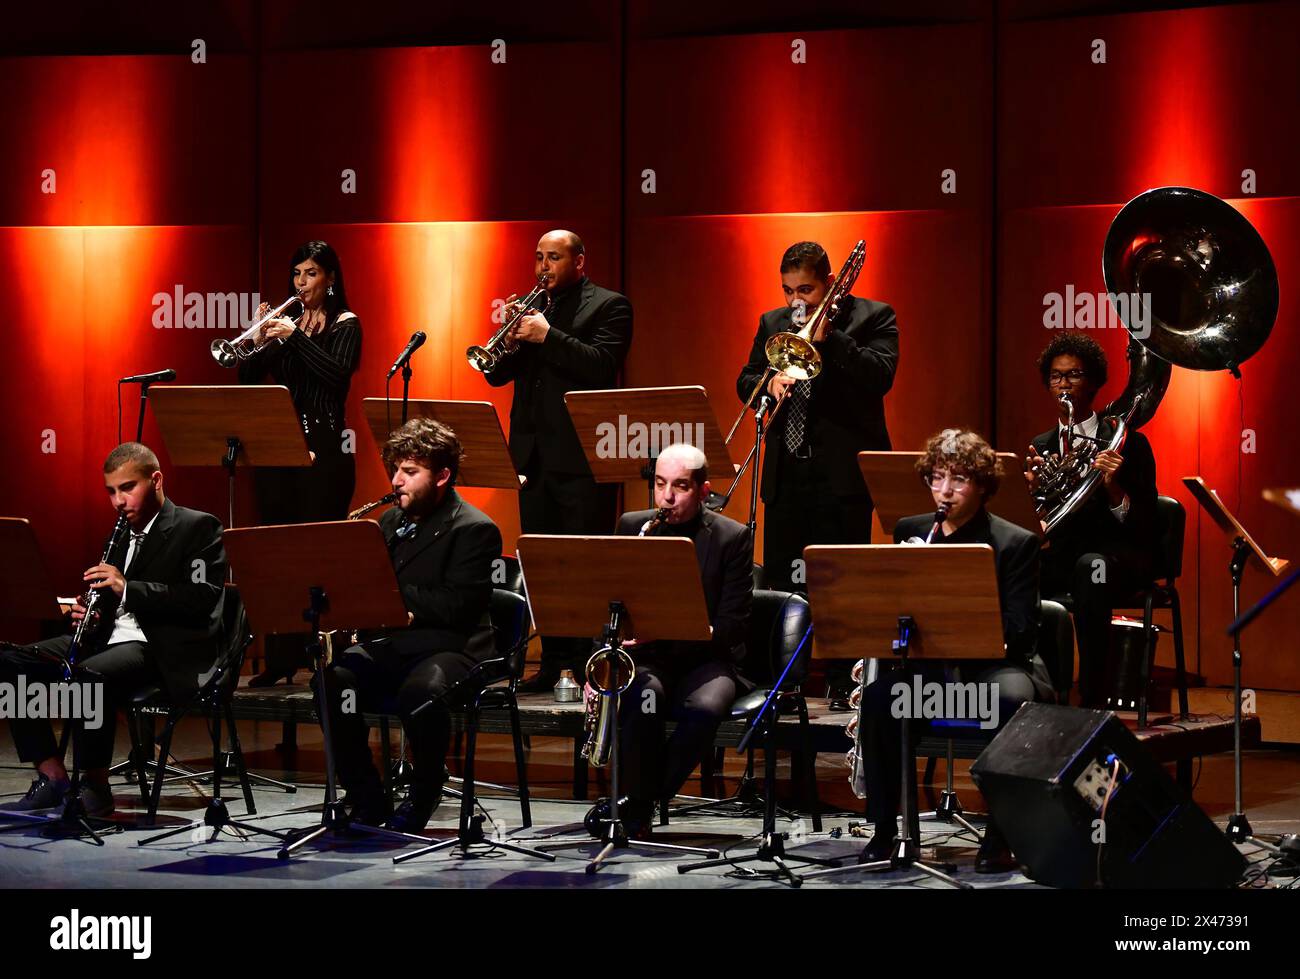 Damaskus, Syrien. April 2024 30. Musiker treten am 30. April 2024 während des Internationalen Jazztags in Damaskus auf. Quelle: Ammar Safarjalani/Xinhua/Alamy Live News Stockfoto